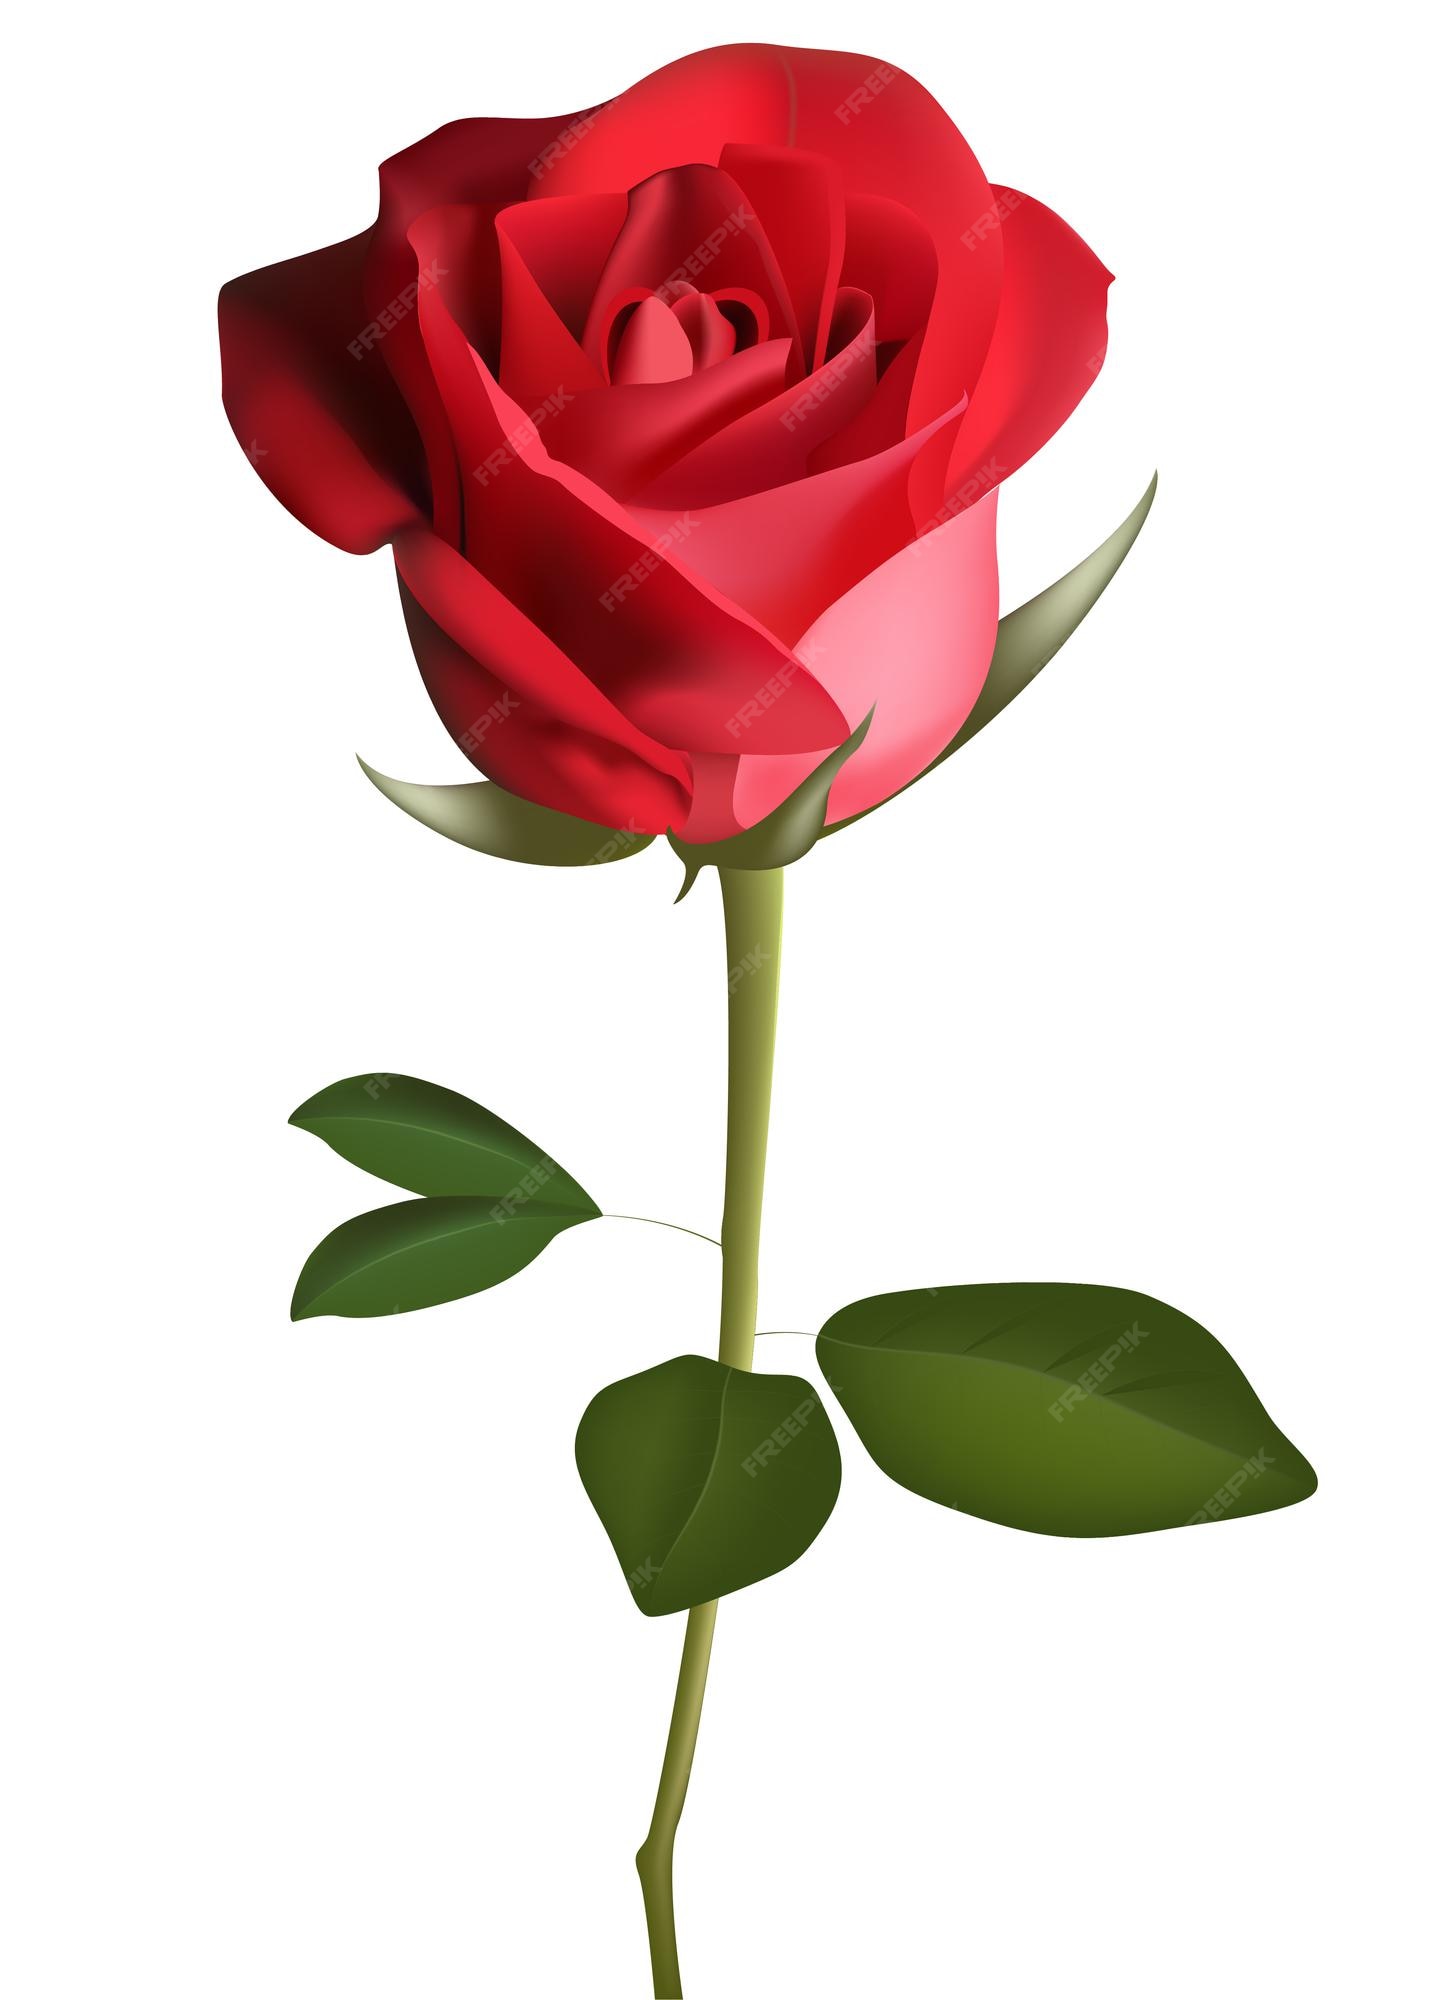 Flor color de rosa de color rojo oscuro con hojas verdes, ilustración de  vector de estilo boceto aislado sobre fondo blanco. dibujo a mano realista de  rosa roja abierta, símbolo del amor,